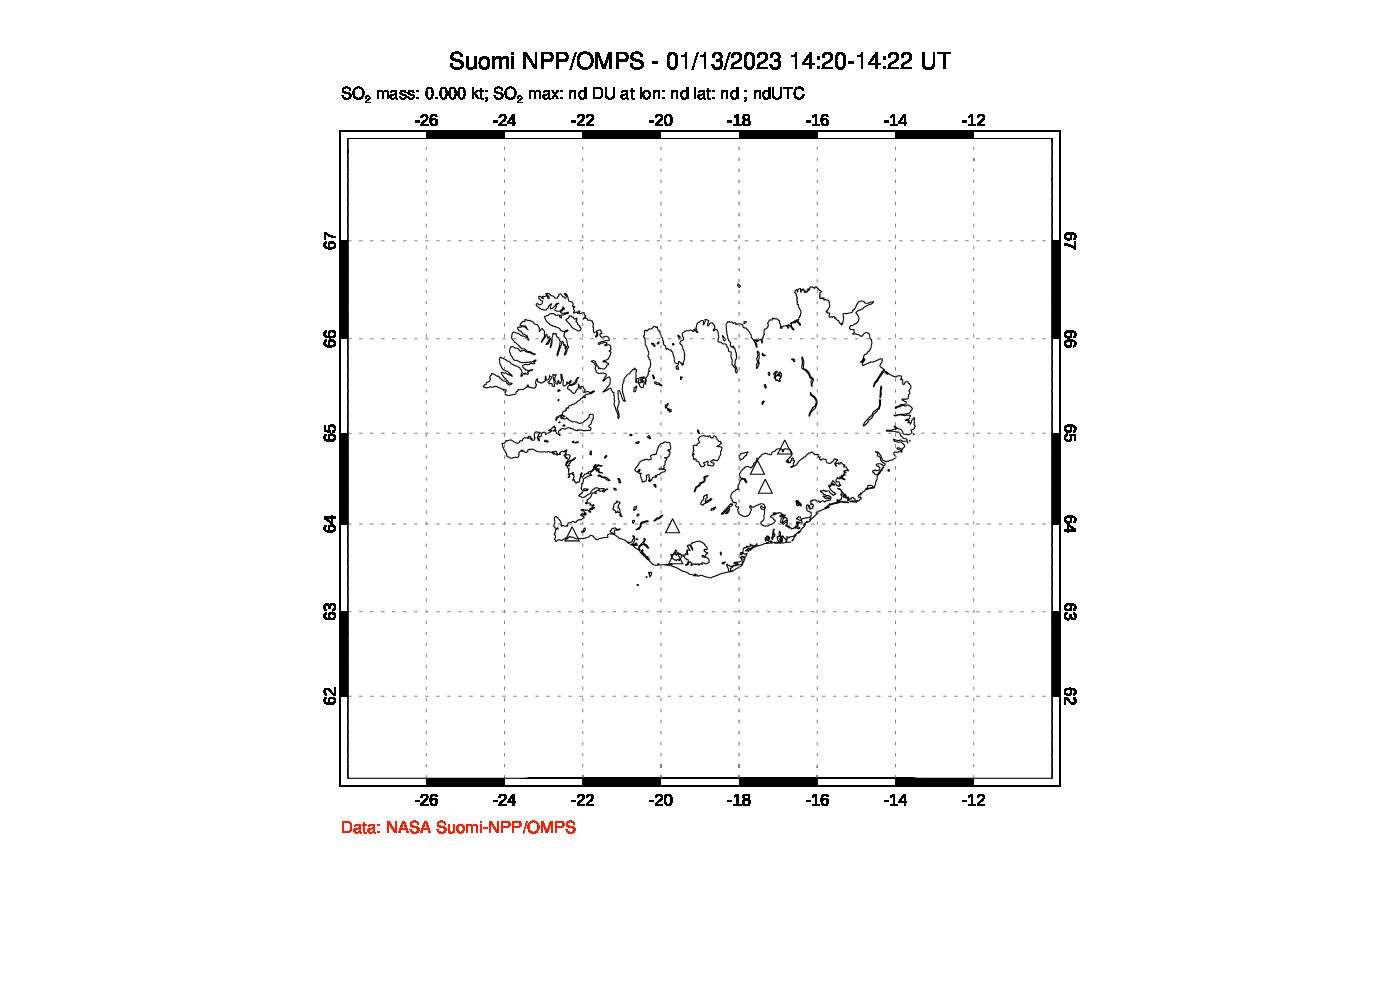 A sulfur dioxide image over Iceland on Jan 13, 2023.